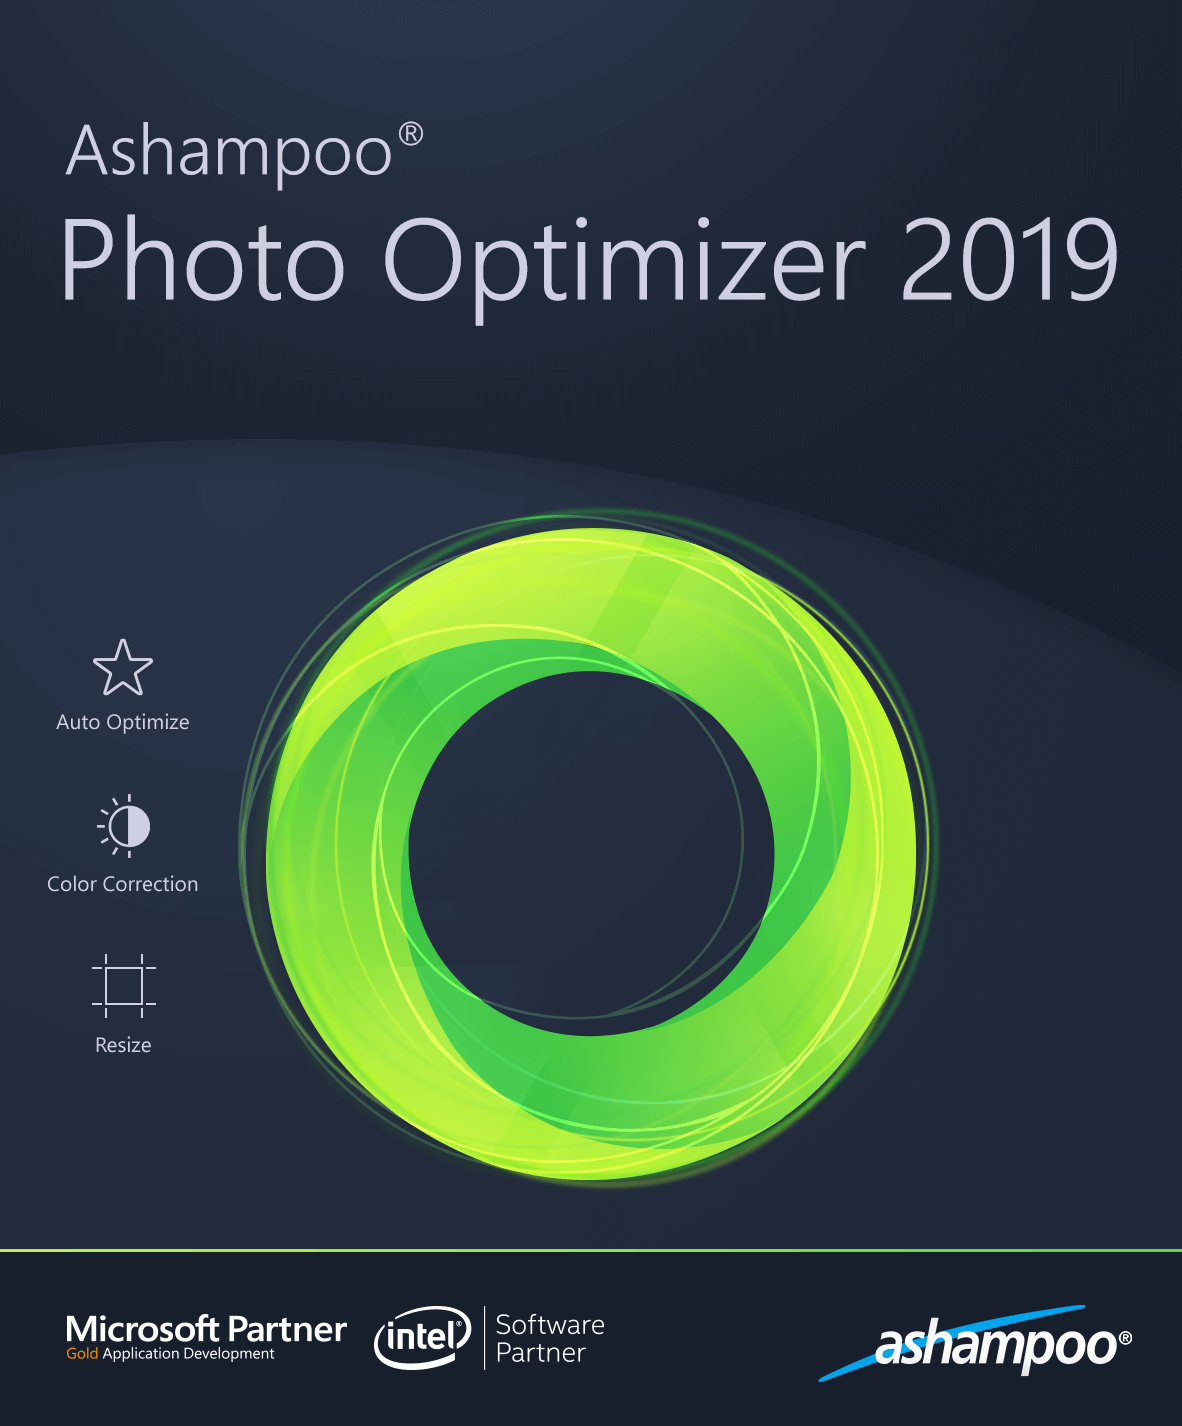 does ashampoo photo optimizer 2019 solve red eye